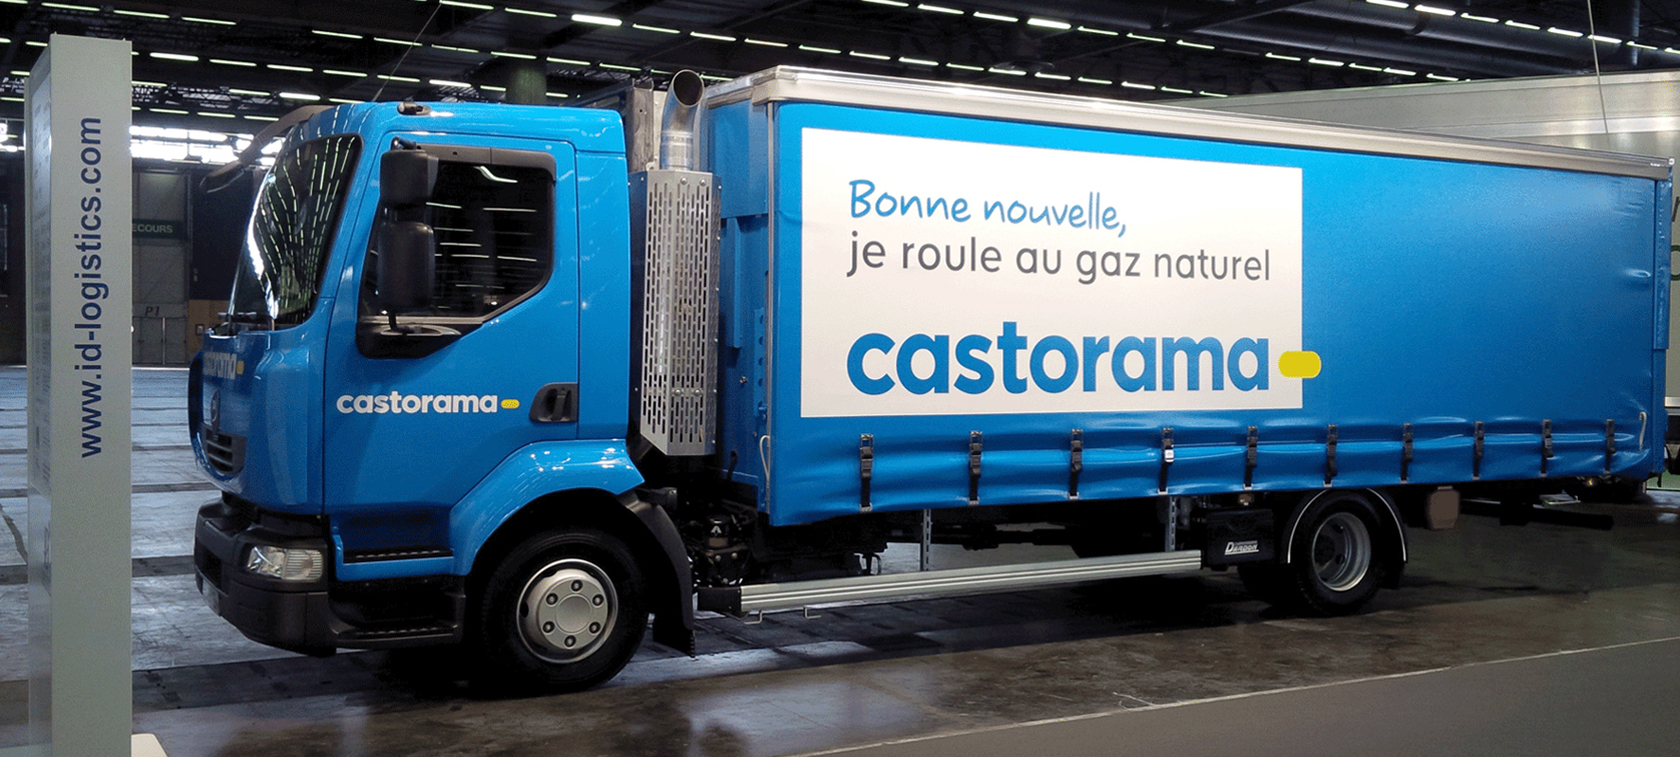 Castorama goes CNG in Paris